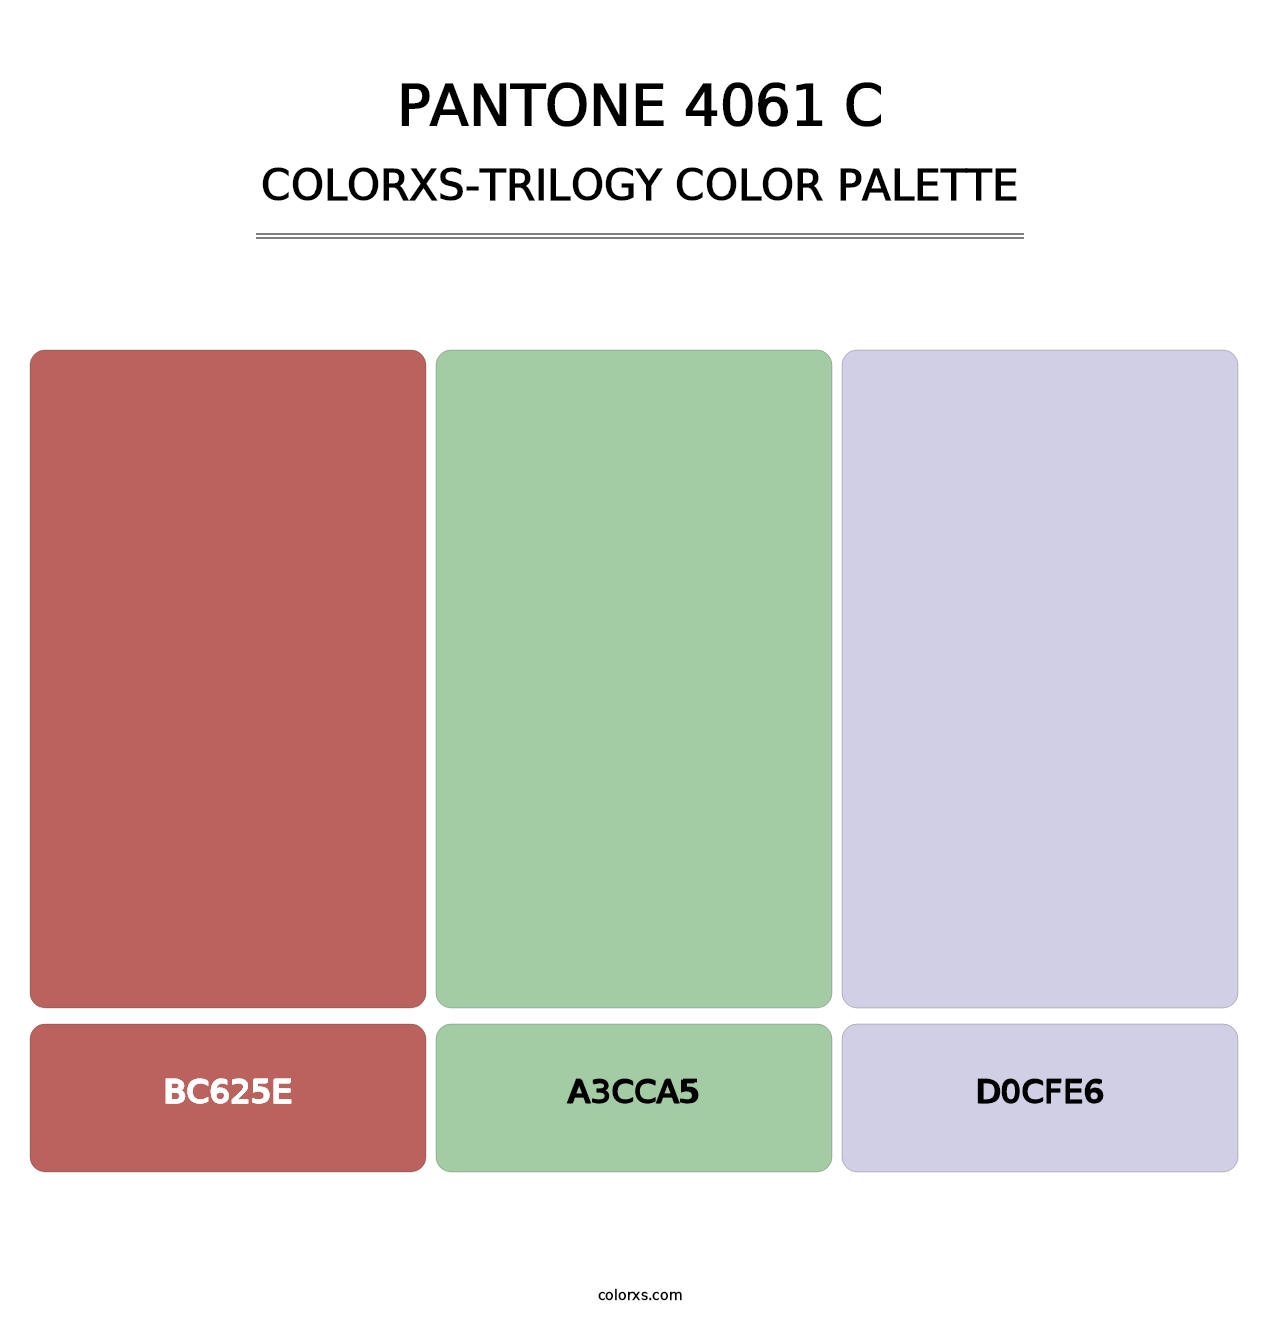 PANTONE 4061 C - Colorxs Trilogy Palette